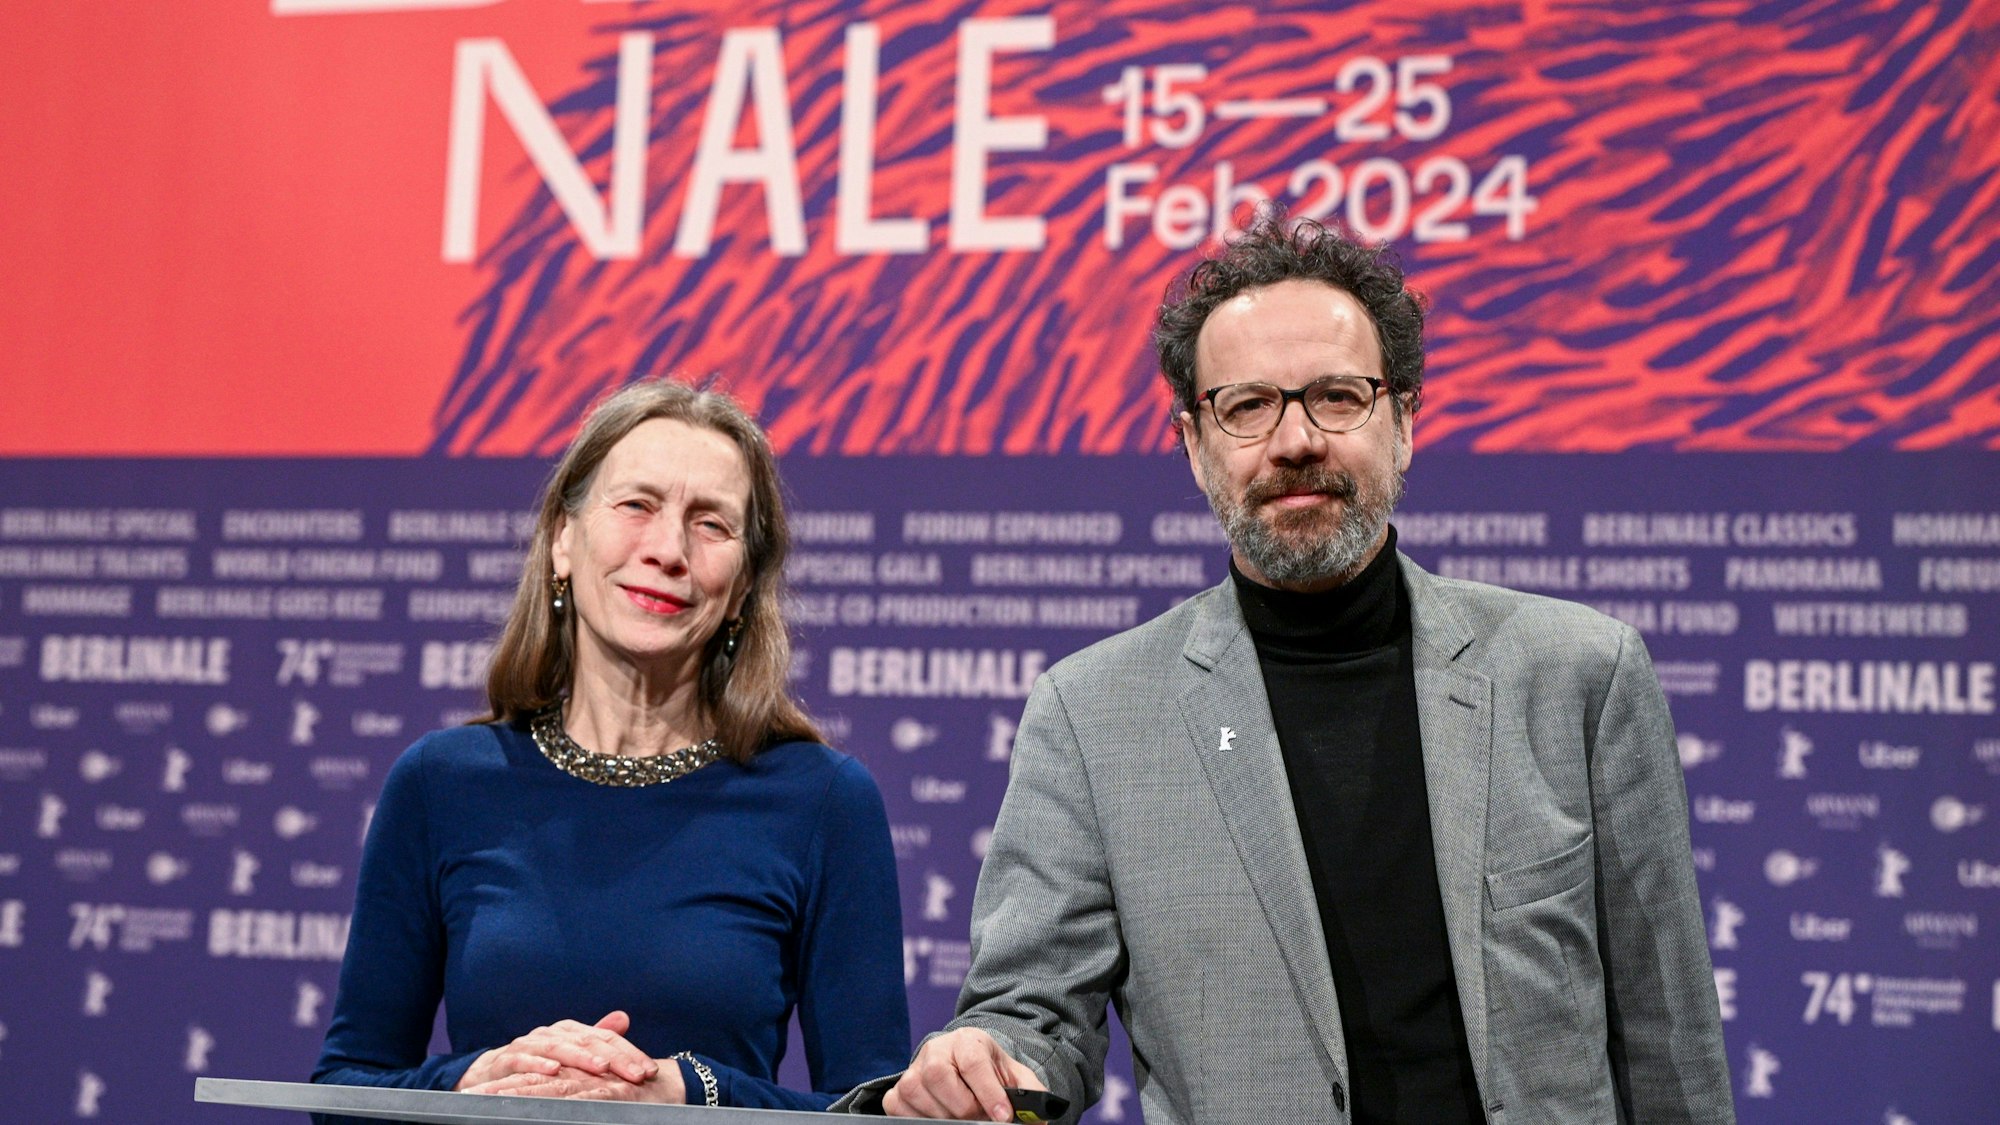 Das Leitungs-Duo der Berlinale, Mariette Rissenbeek, Geschäftsführerin, und Carlo Chatrian, künstlerischer Direktor, stehen vor Beginn der Pressekonferenz zur Vorstellung Bekanntgabe des Berlinale-Programms 2024 mit Merchandiseartikeln der Berlinale auf der Bühne.